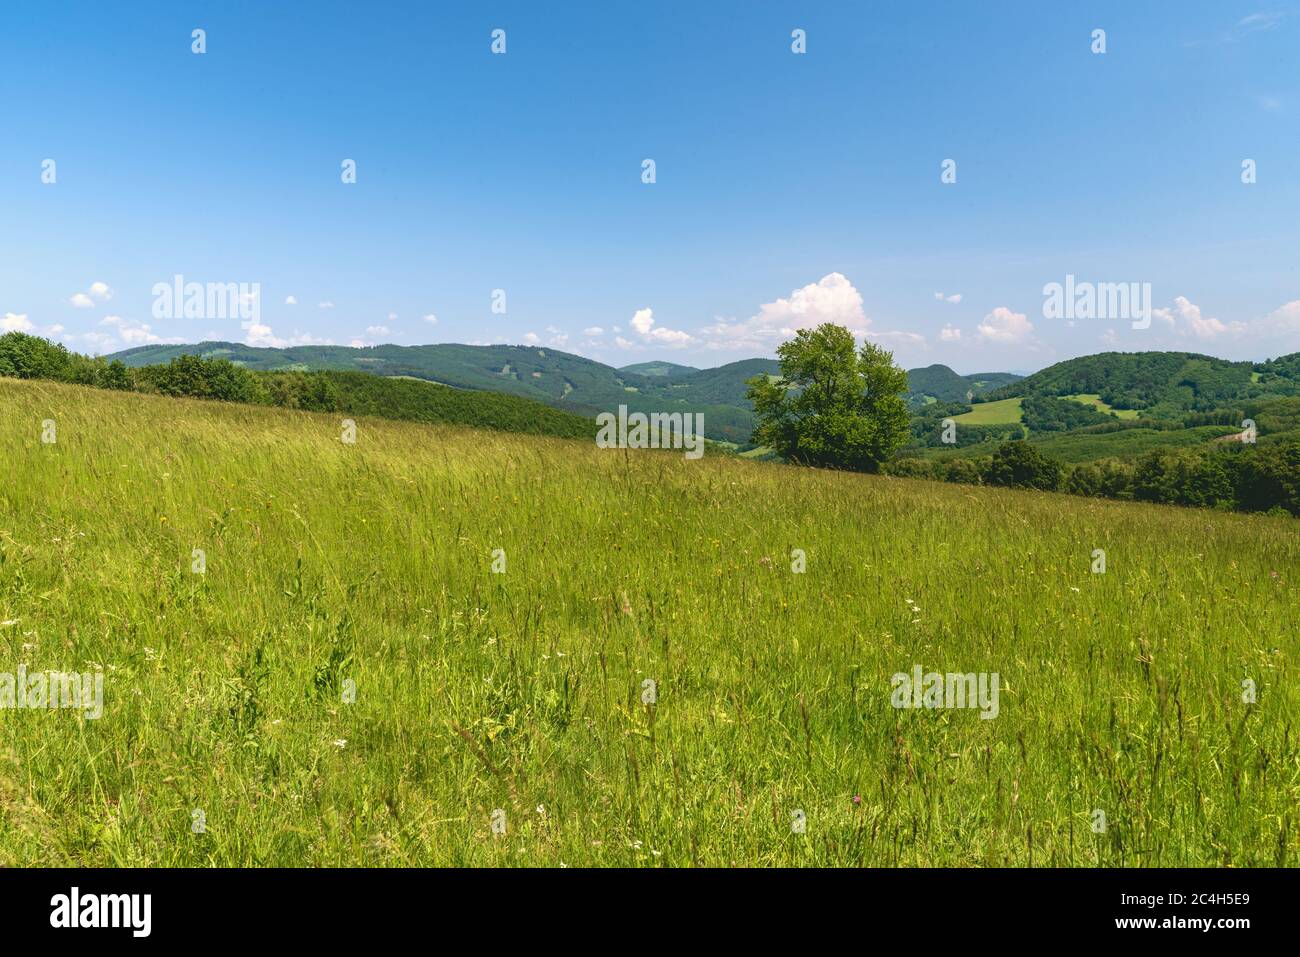 Schöne Biele Karpaty Berge mit Hügeln durch die Mischung von Wiesen und Wald in der Slowakei in der Nähe Vrsatske Podhradie Dorf während des Frühlings Tag wi begehrt Stockfoto